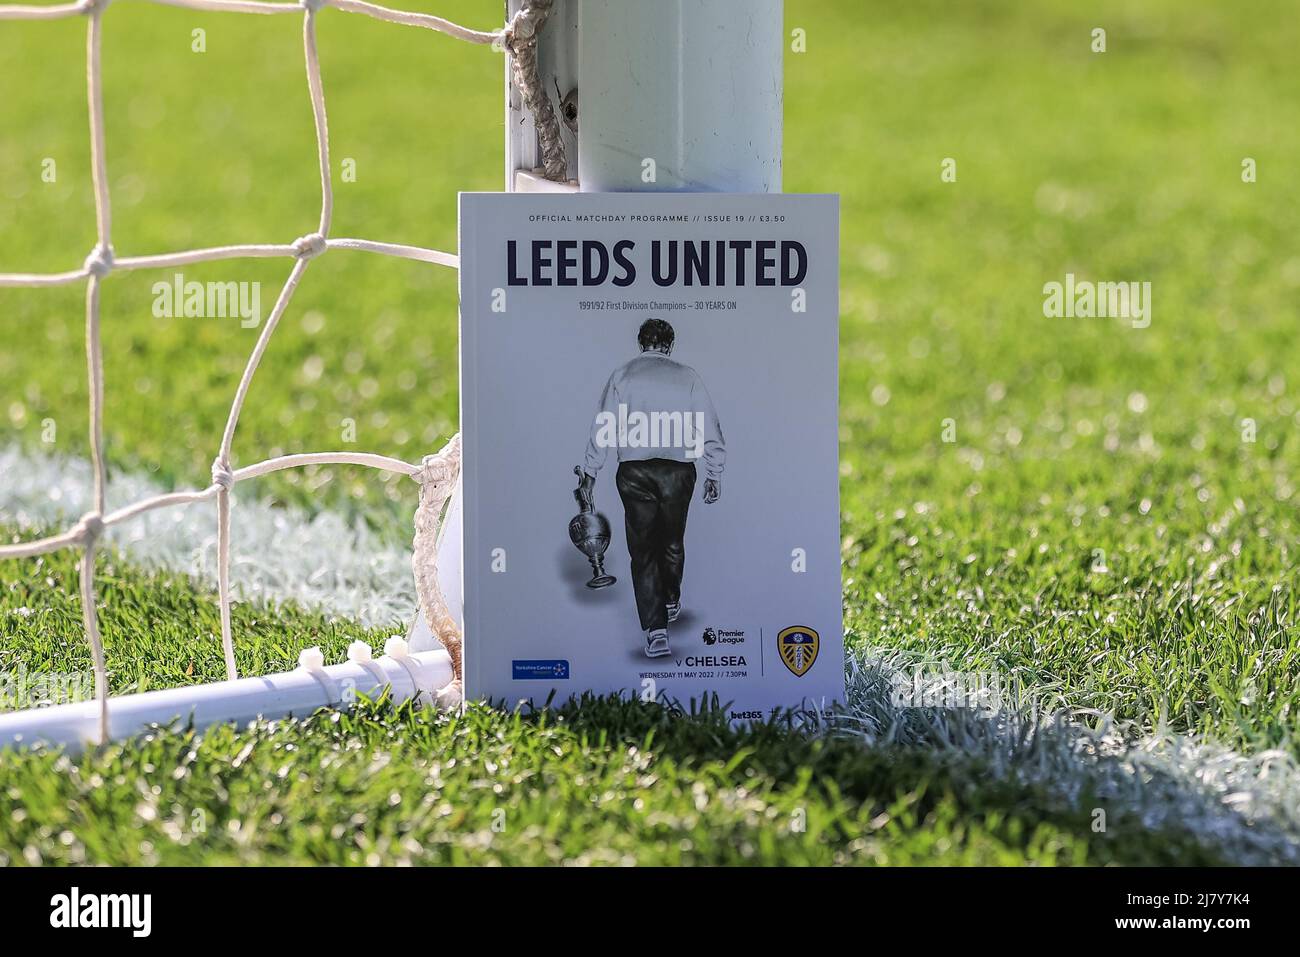 Hornear pálido Por favor mira Howard Wilkinson en la portada de hoy programa de día de partido para  marcar 30 años desde Leeds United ganó la antigua primera división  Fotografía de stock - Alamy